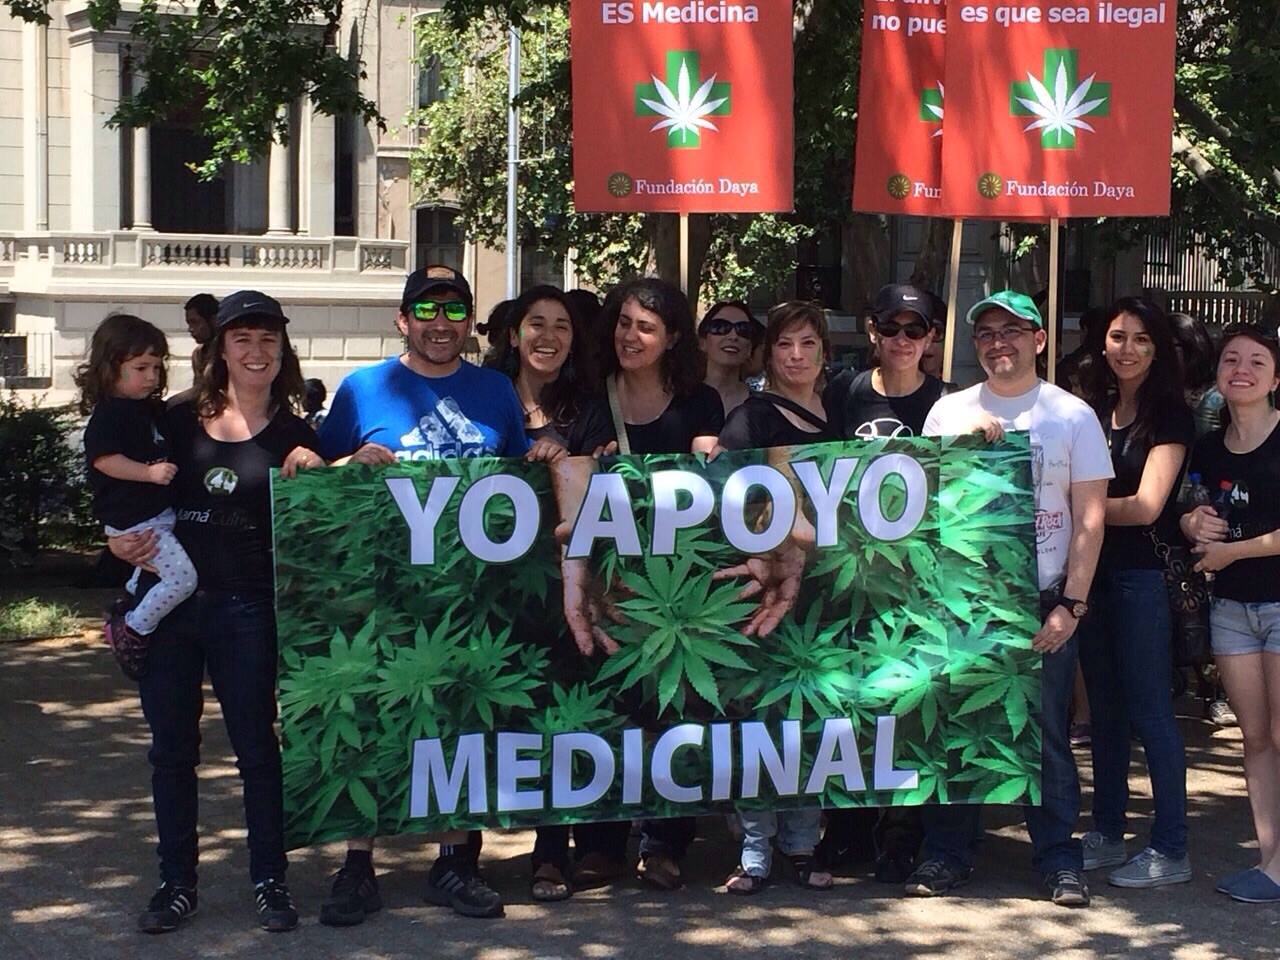 Marihuana medicinal: Avanzan en el Congreso proyectos para legalizar su uso